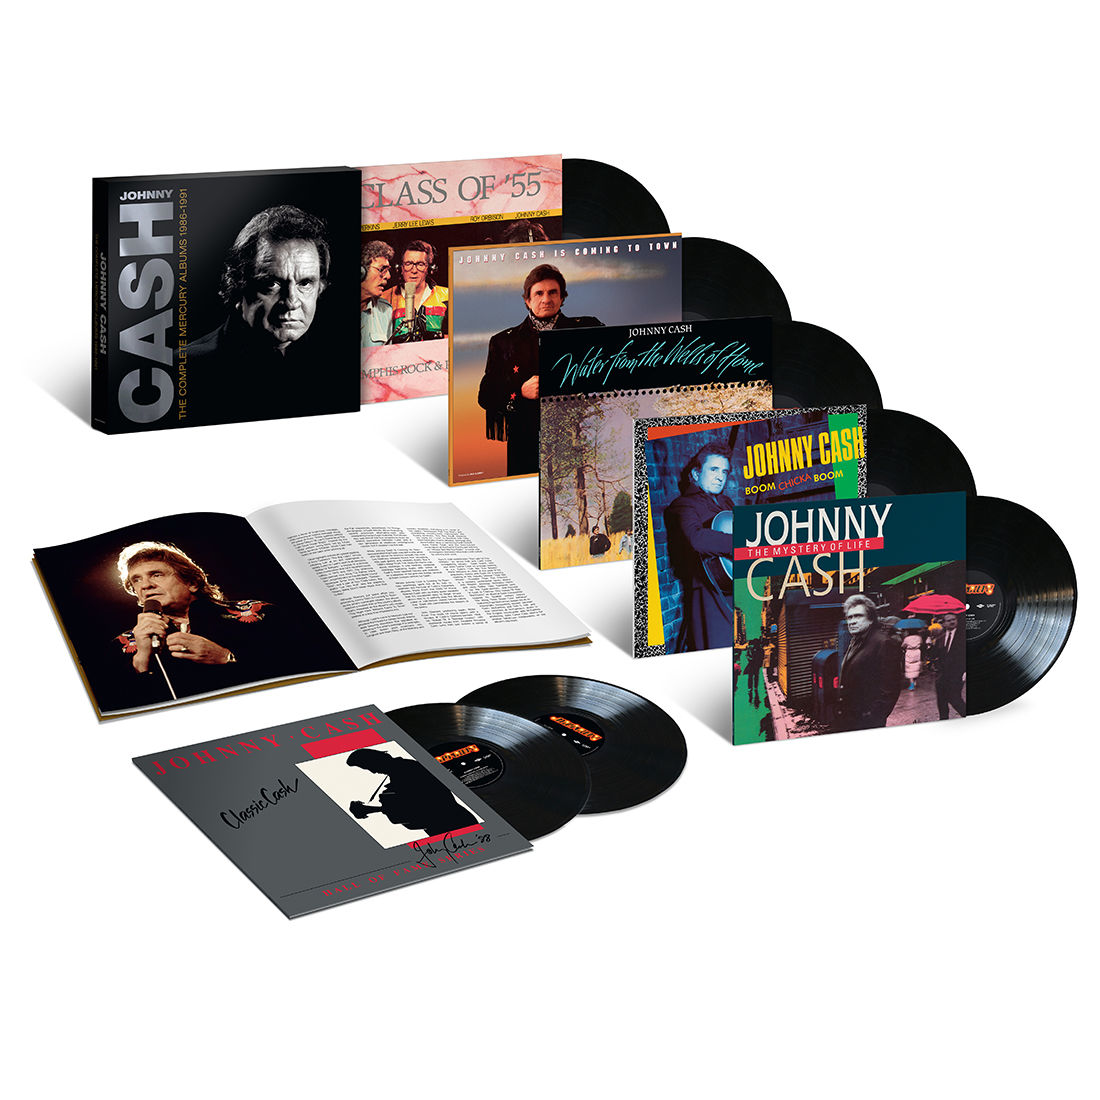 Johnny Cash - The Complete Mercury Albums 1986-1991 (7 LP Box Set)